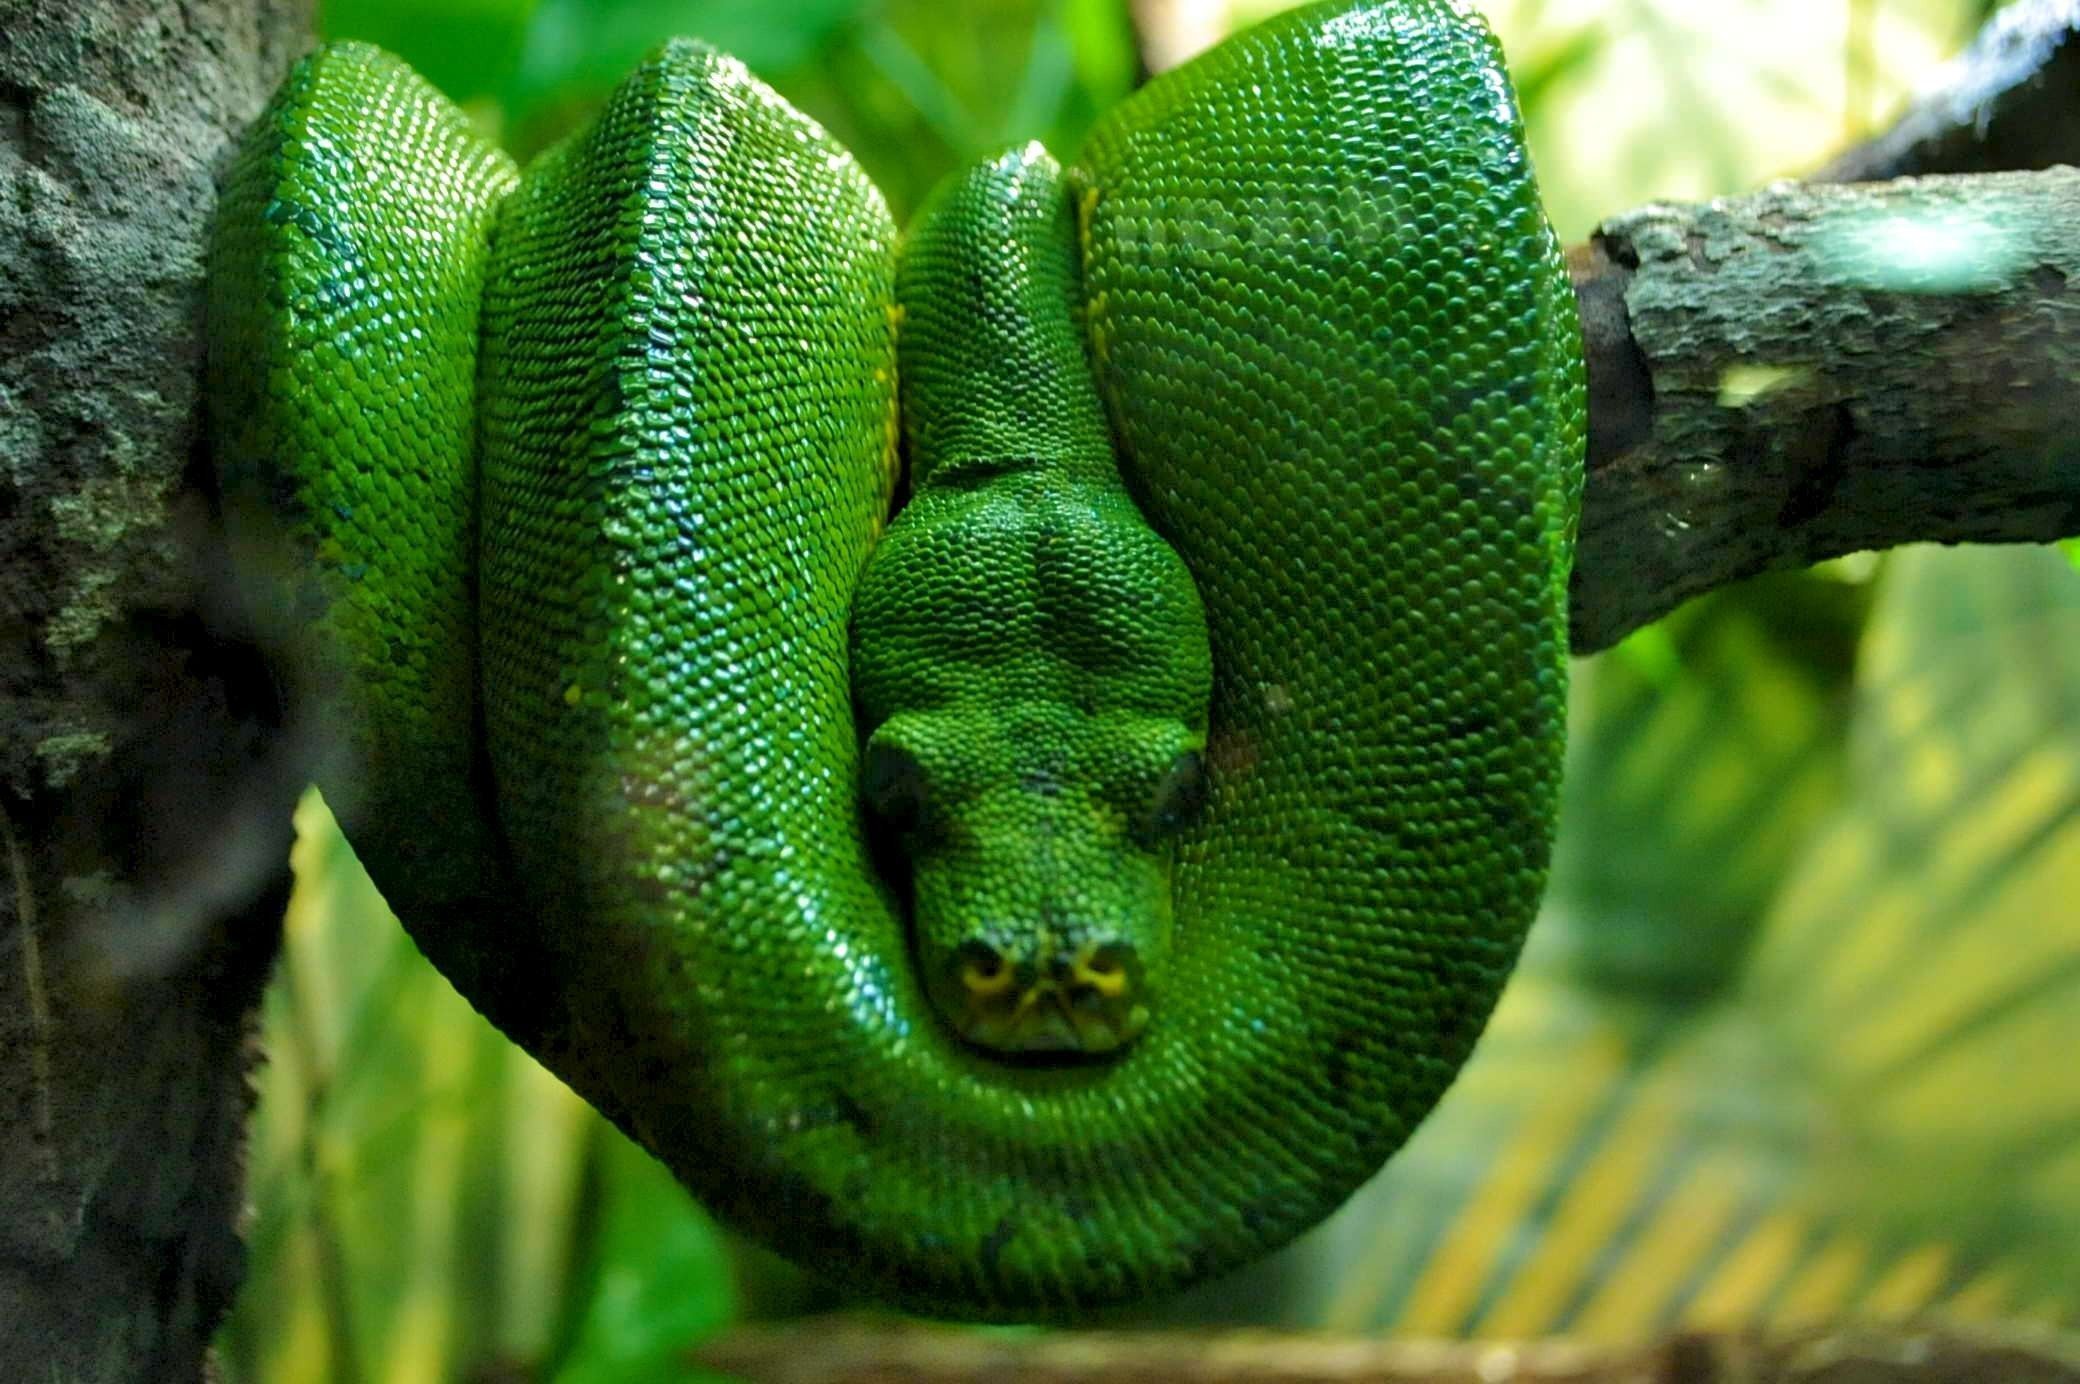 Змеи живут в тропическом лесу. Зелёный питон пресмыкающиеся?. Собакоголовый удав. Фауна экваториальных лесов Южной Америки. Зеленая мамба, рептилия, Elapidae.